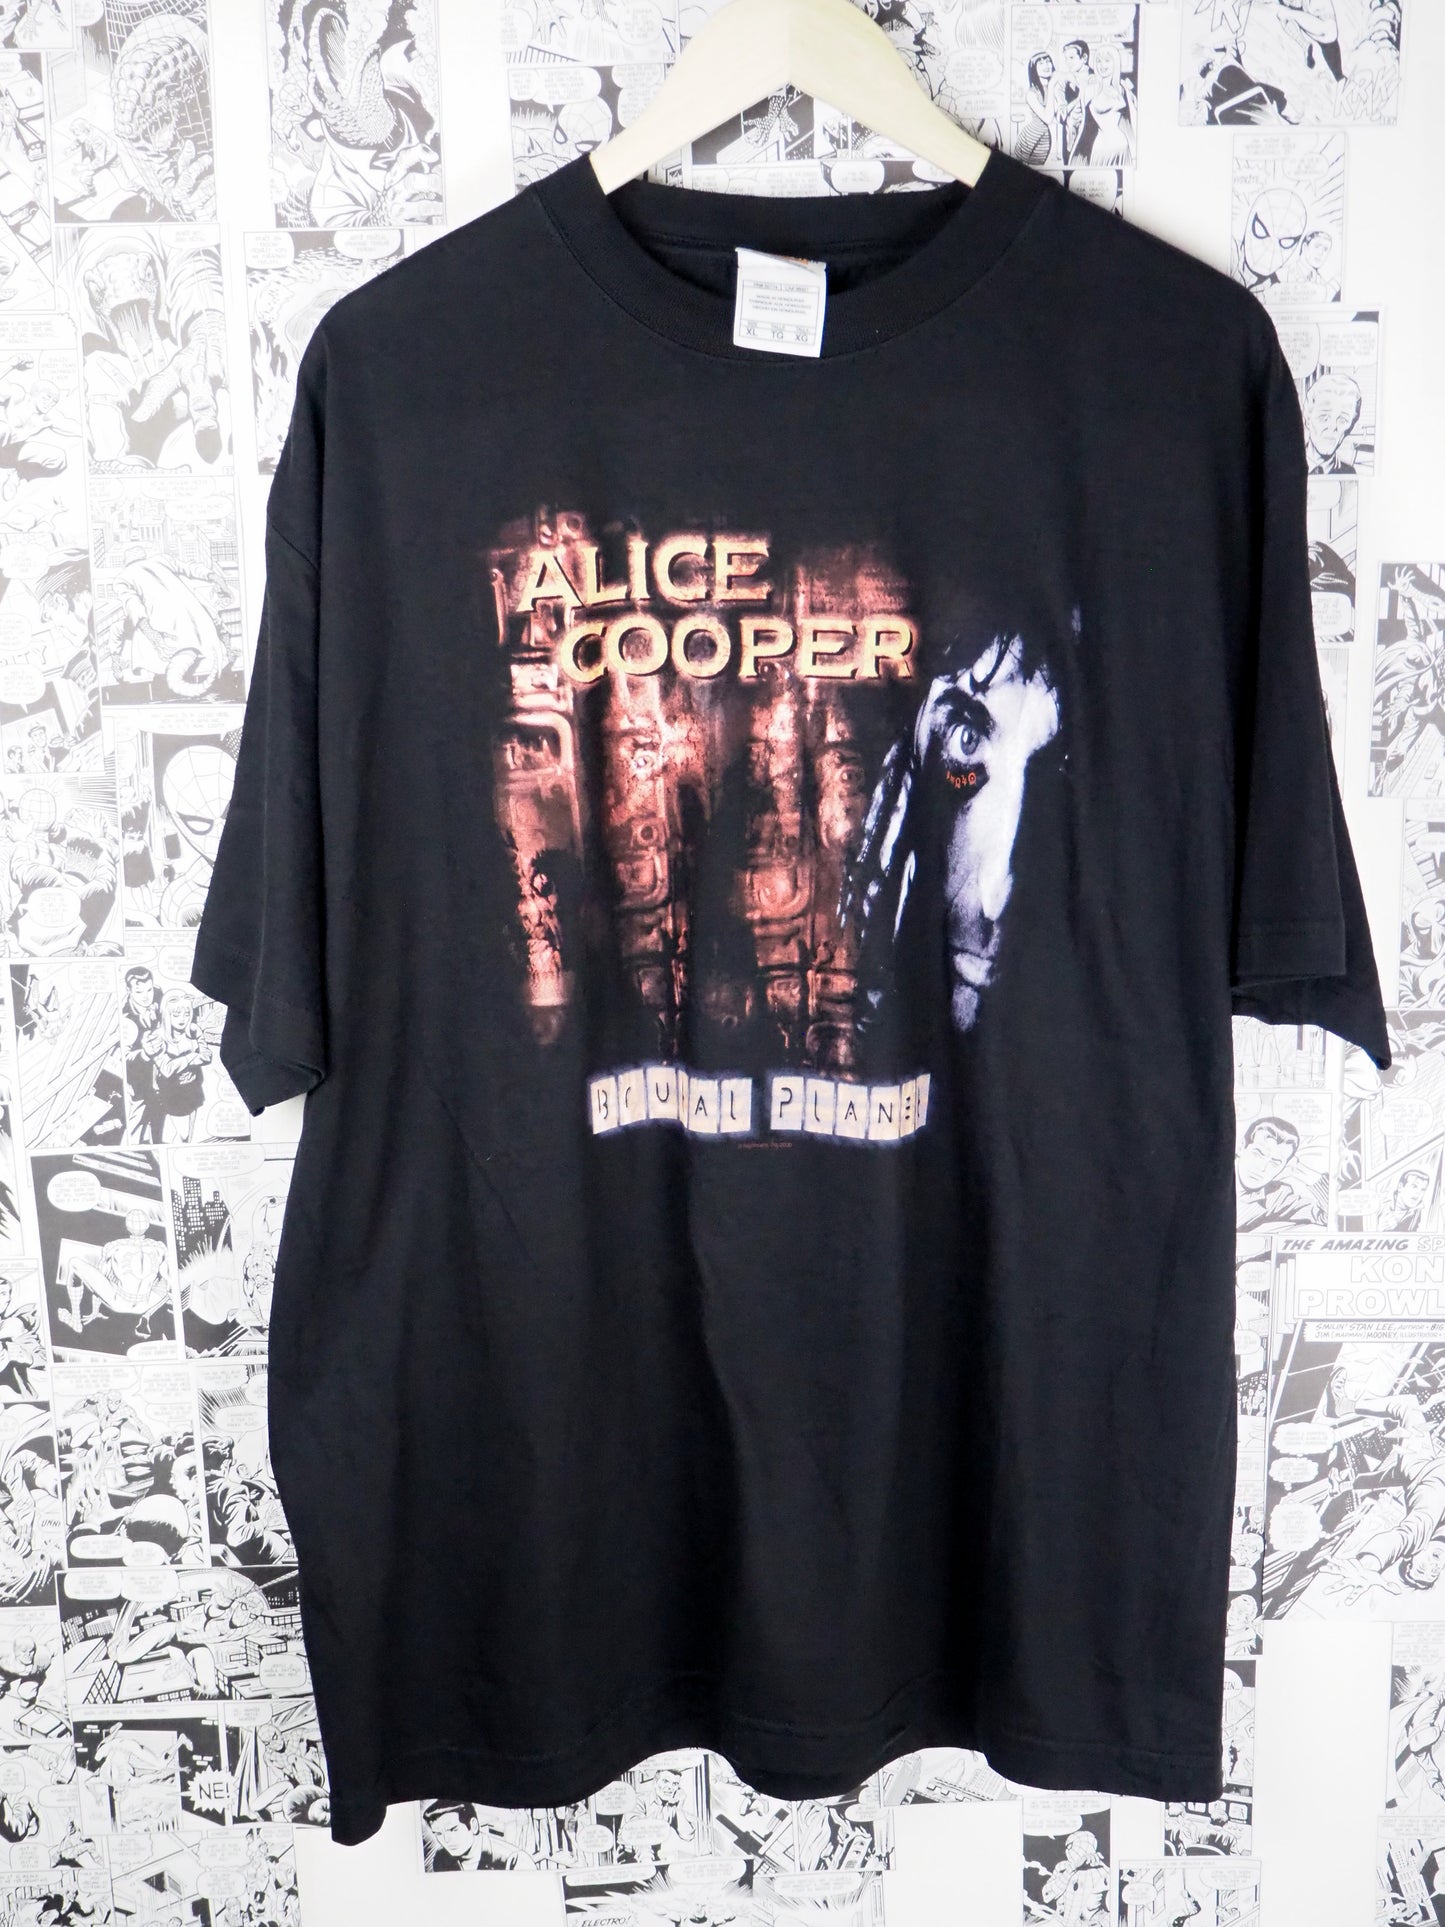 Vintage Alice Cooper "Brutal Planet" 2000 t-shirt - size XL